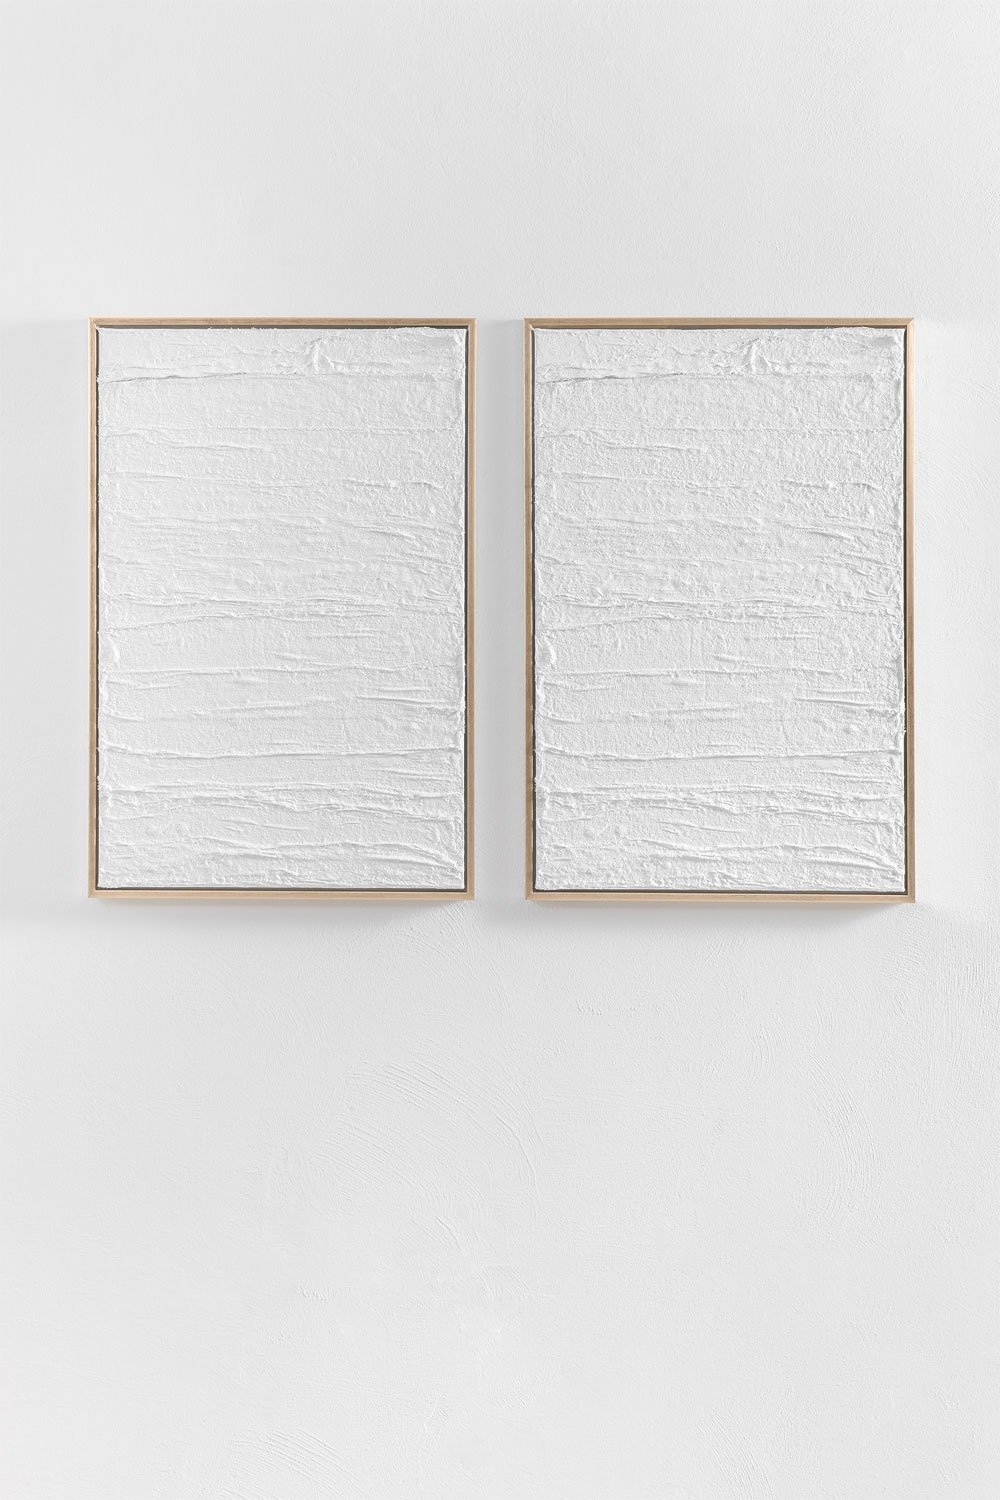 Set van 2 decoratieve schilderijen in gipsreliëf (60x90 cm) Leclerc, galerij beeld 1